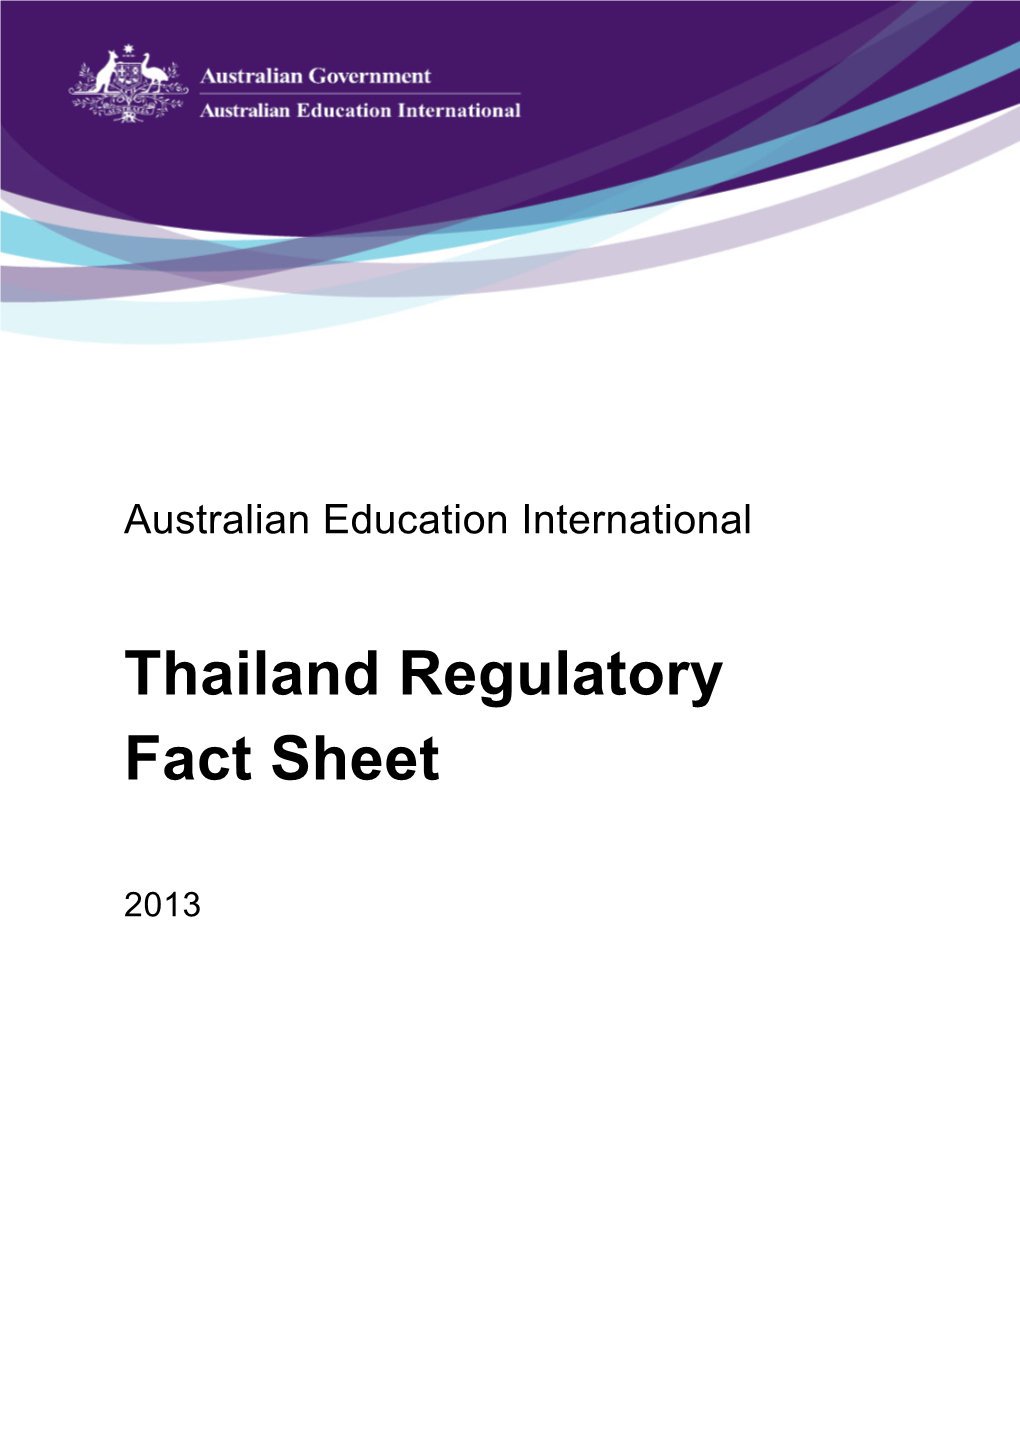 Thailand Regulatory Fact Sheet 2013